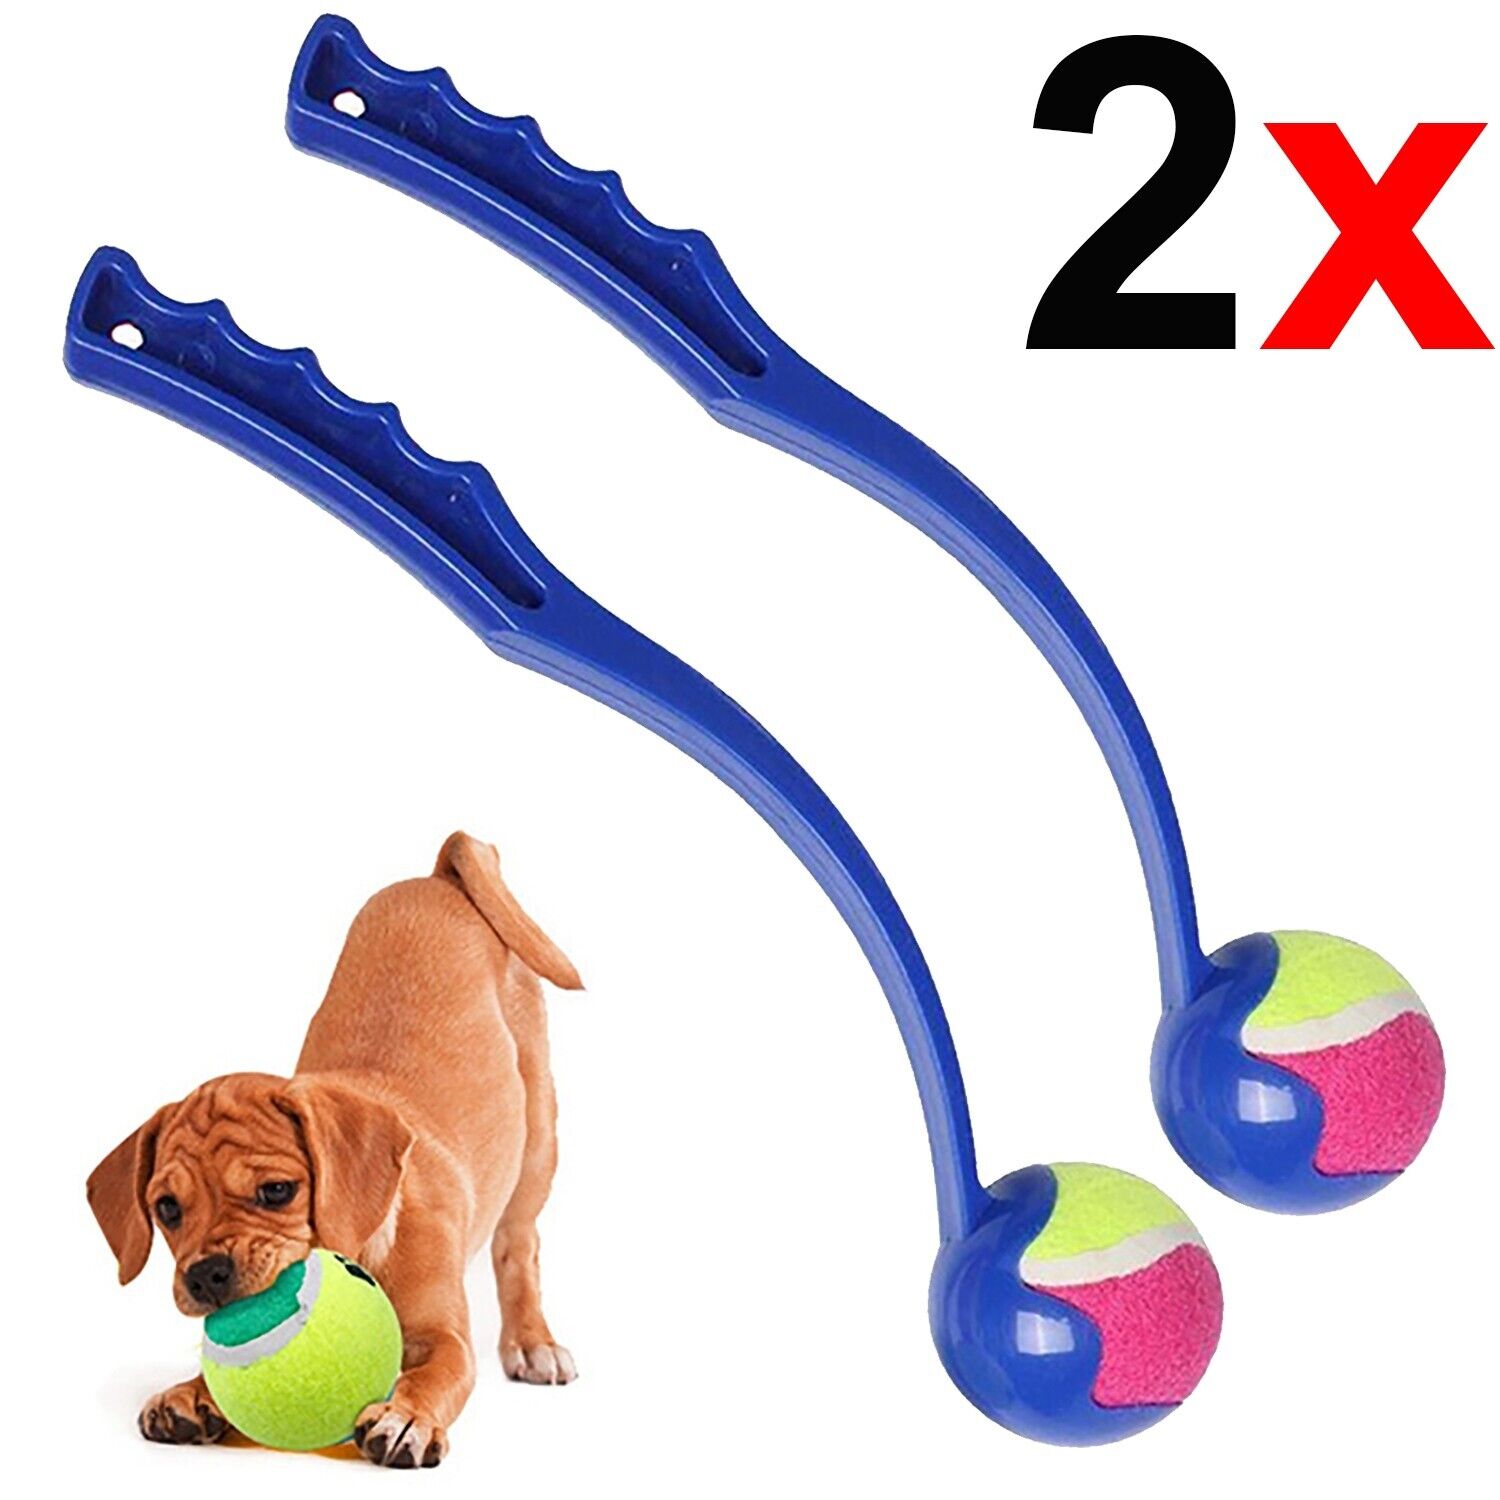 2x Dog Puppy Chucker Fetch Ball Thrower Launcher Play Toy Tennis Pet Walking Park Summer